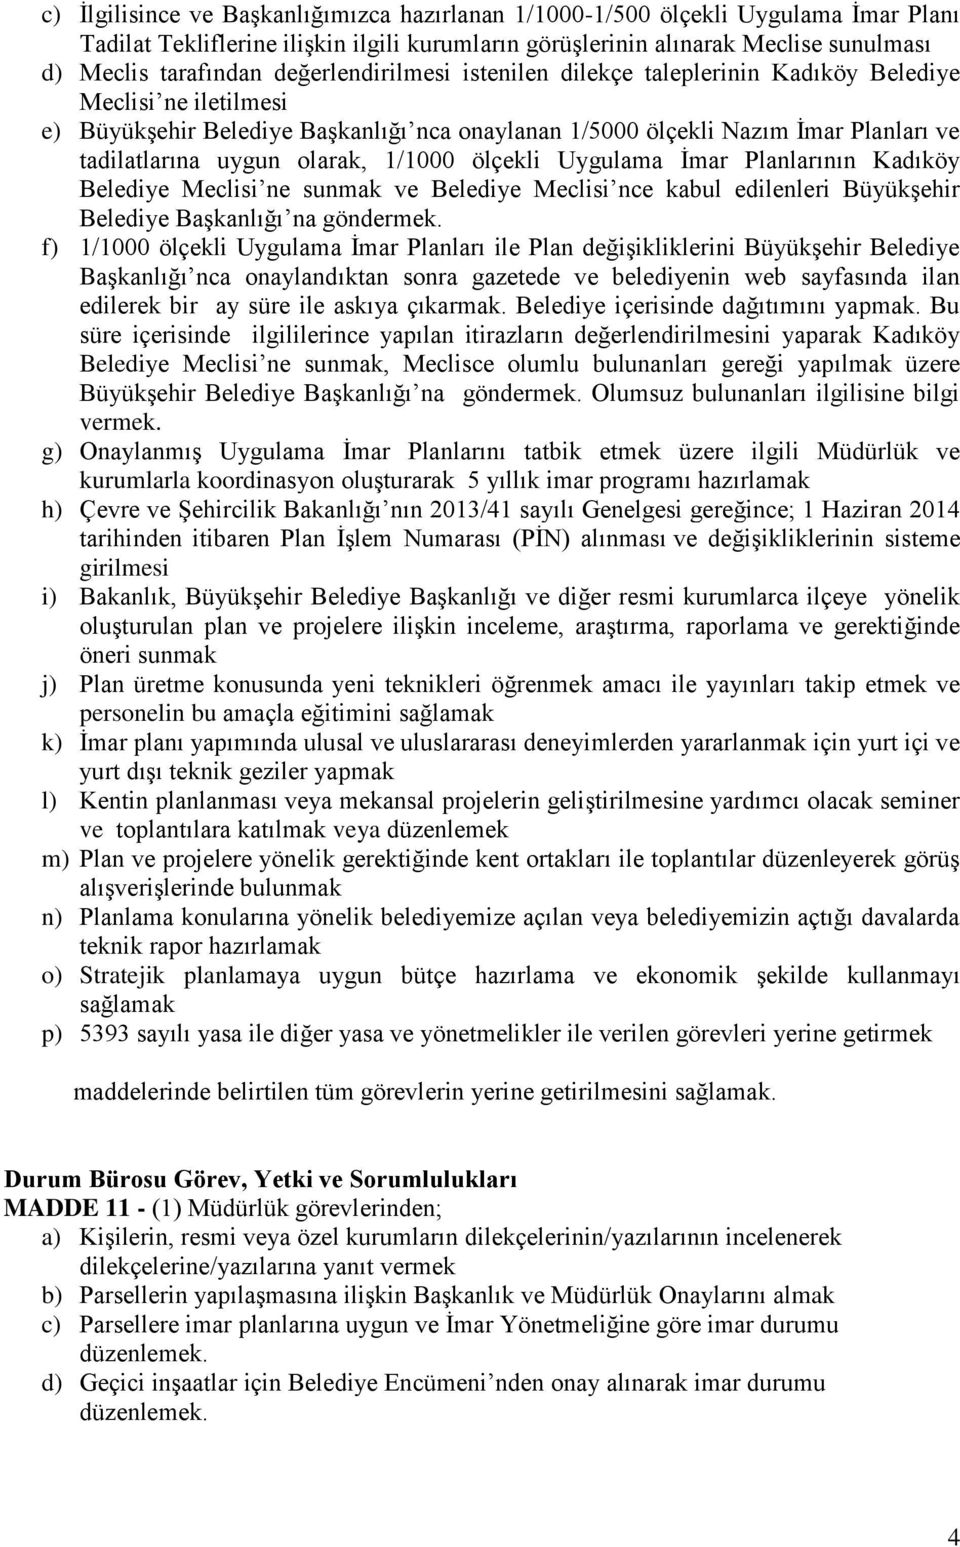 olarak, 1/1000 ölçekli Uygulama İmar Planlarının Kadıköy Belediye Meclisi ne sunmak ve Belediye Meclisi nce kabul edilenleri Büyükşehir Belediye Başkanlığı na göndermek.